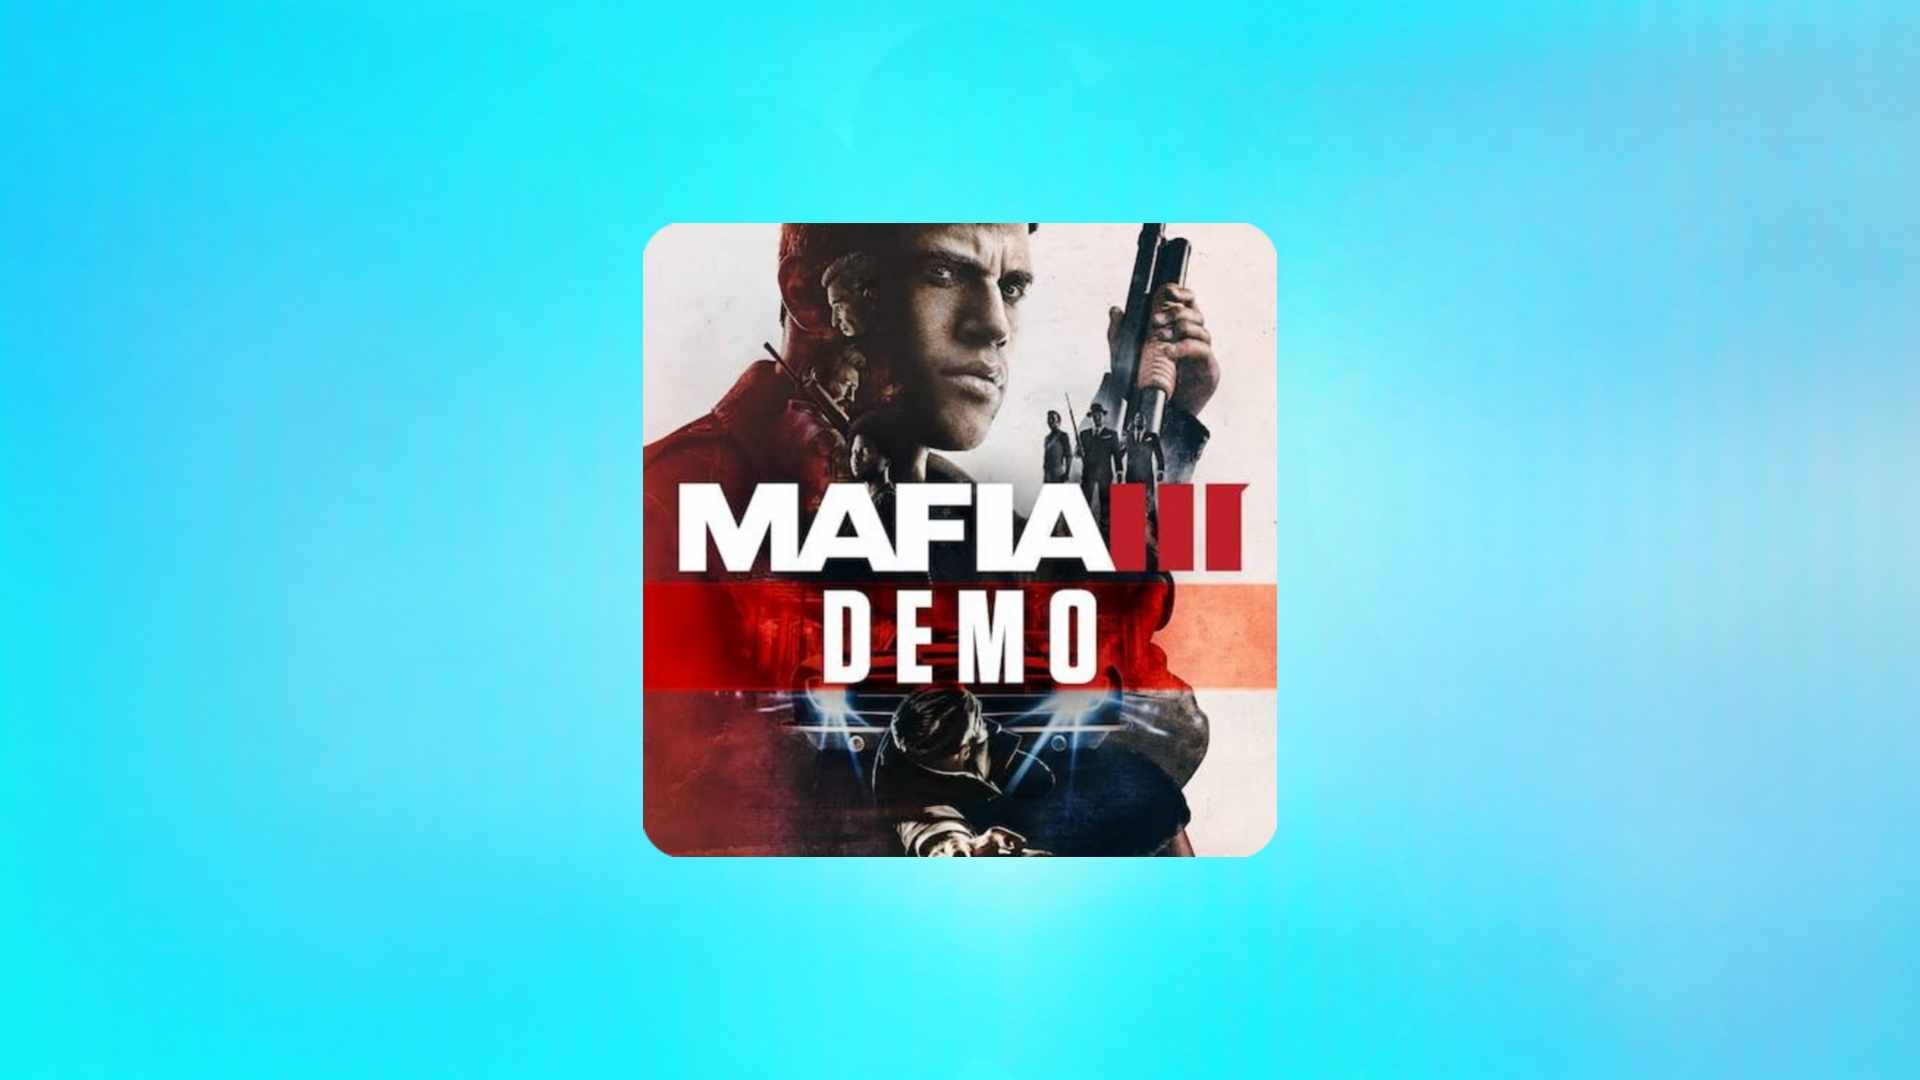 הורד את משחק Mafia 3 למחשב בעברית בחינם